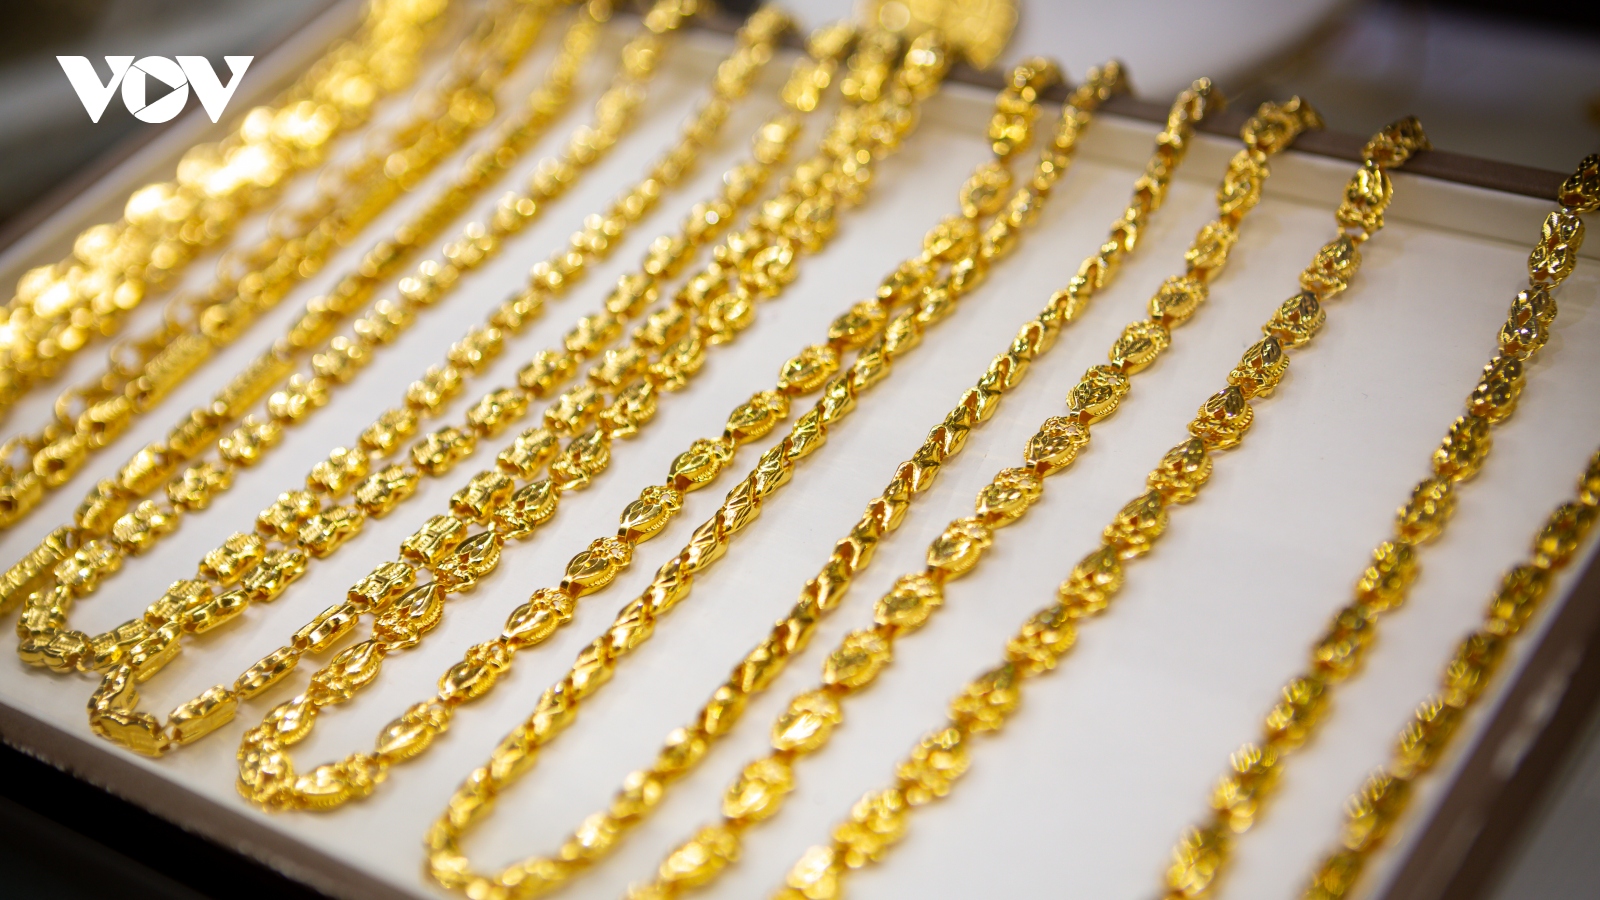 Giá vàng hôm nay 15/12: Giá vàng SJC đứng giá ở mức 74,3 triệu đồng/lượng